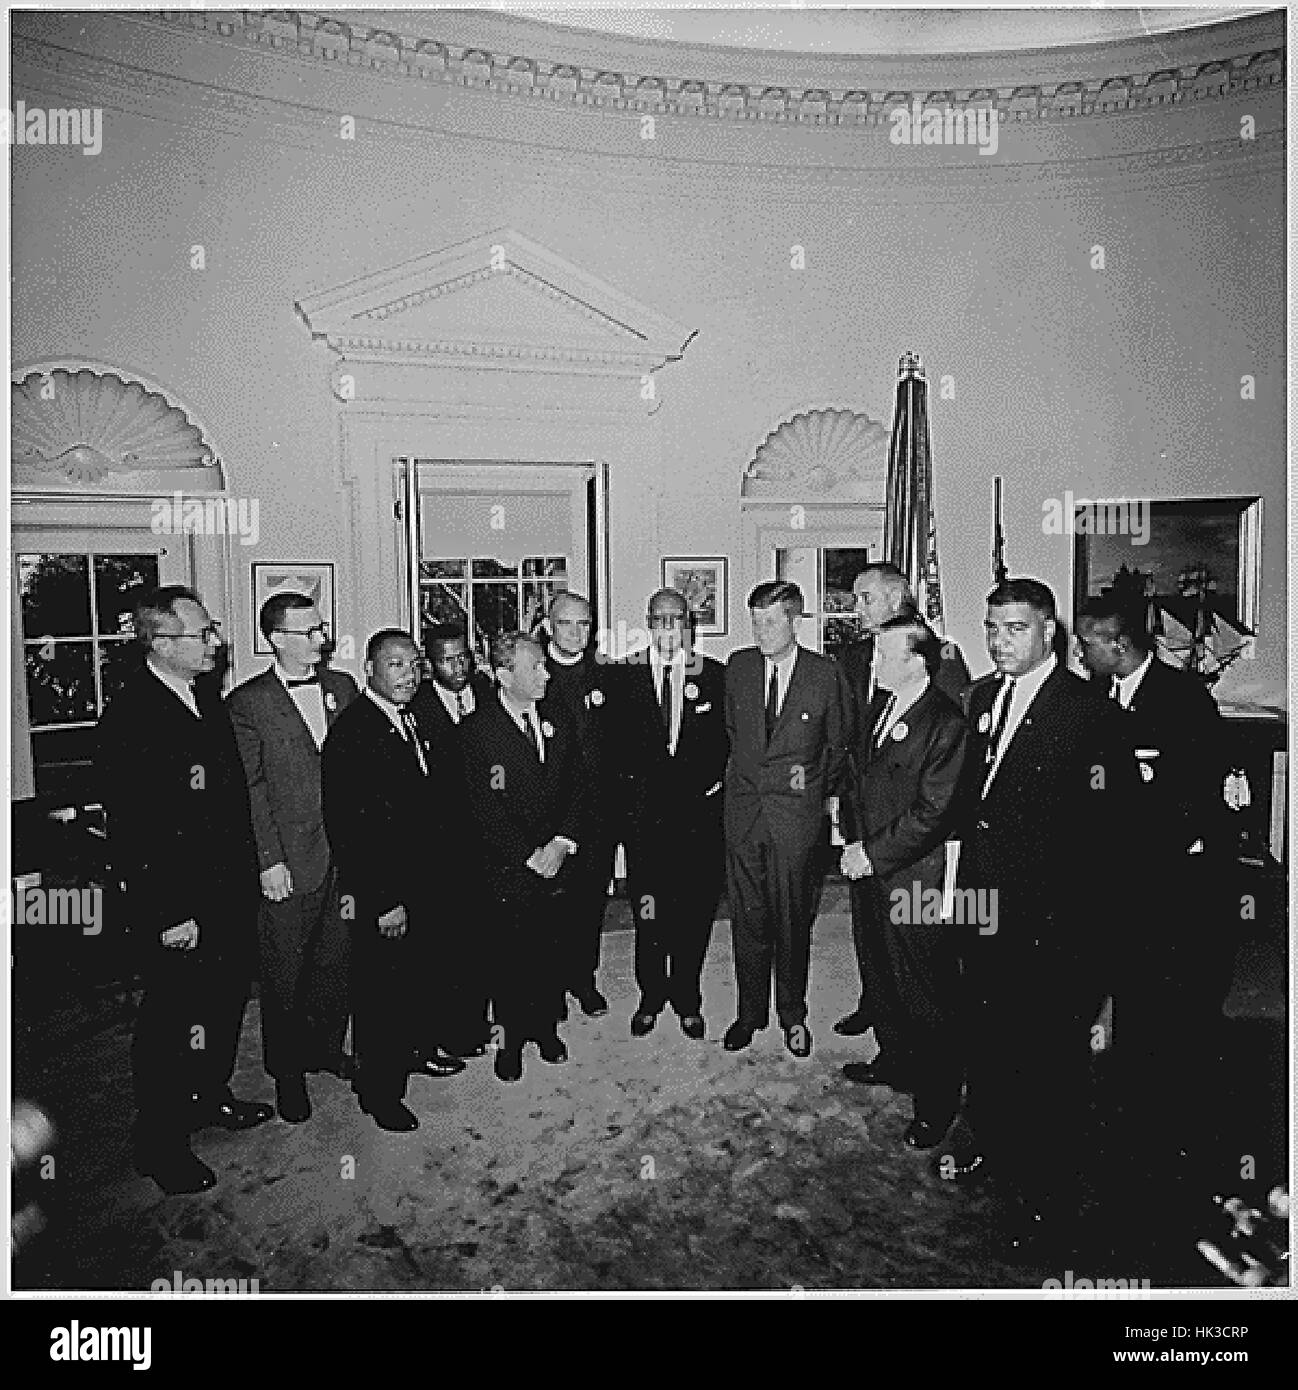 Foto von US-Präsident John F. Kennedy treffen im Oval Office des weißen Hauses in Washington, DC mit den Führern des Marsches auf Washington am 28. August 1963. Von links nach rechts: Willard Wirtz, Martin Luther King, Jr., Eugene Autos Stockfoto